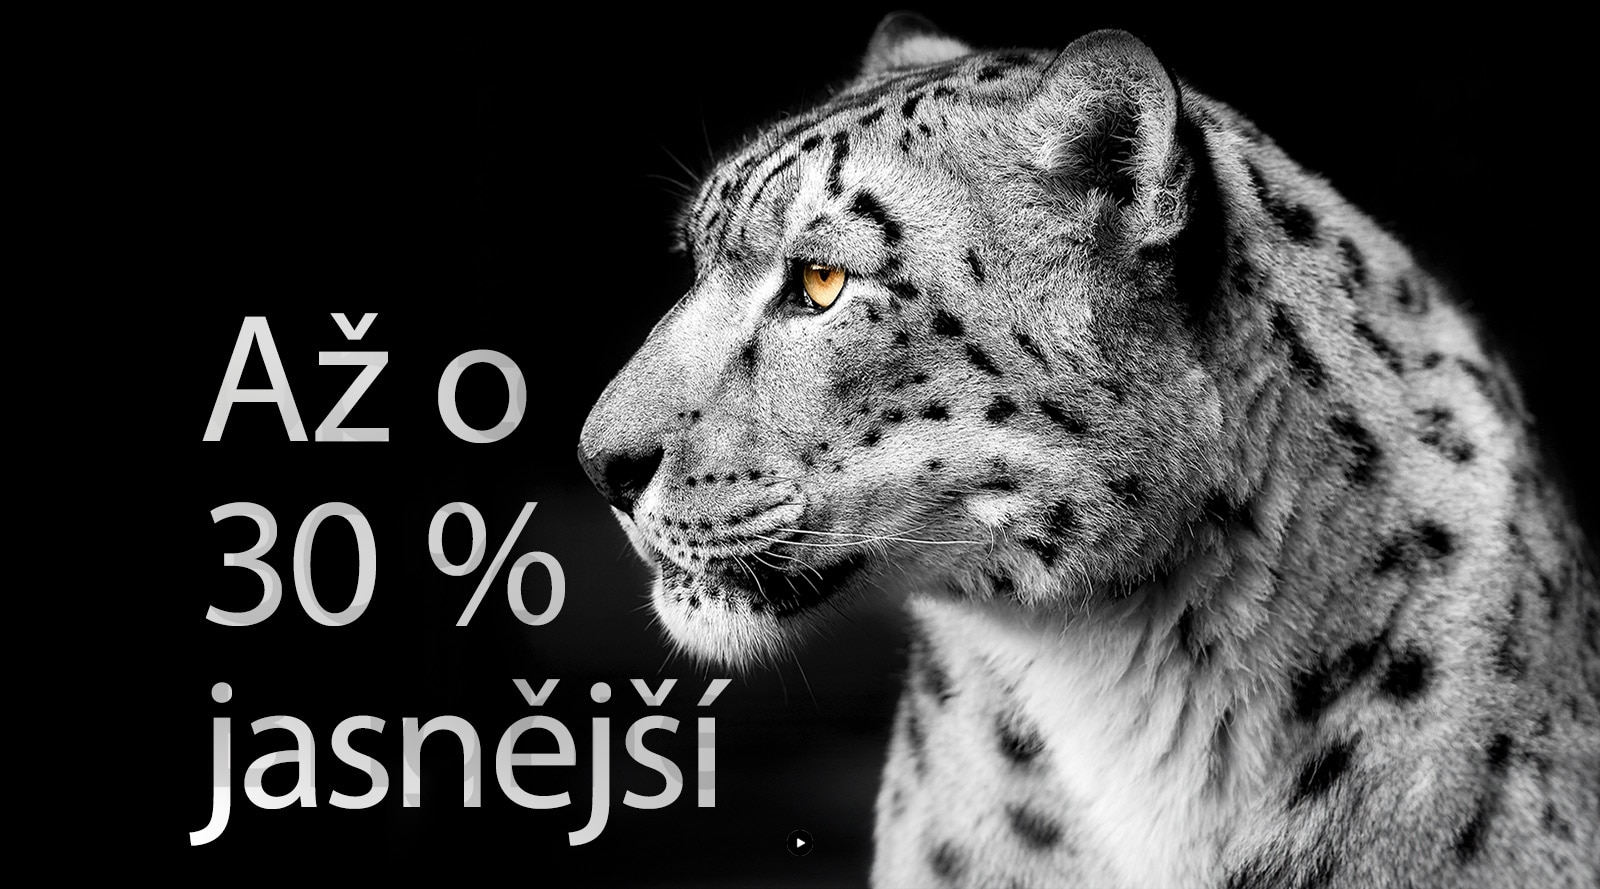 Bílý leopard ukazuje svou boční tvář na levé straně snímku. Nápis „Až o 30 % jasnější“ se zobrazuje vlevo.